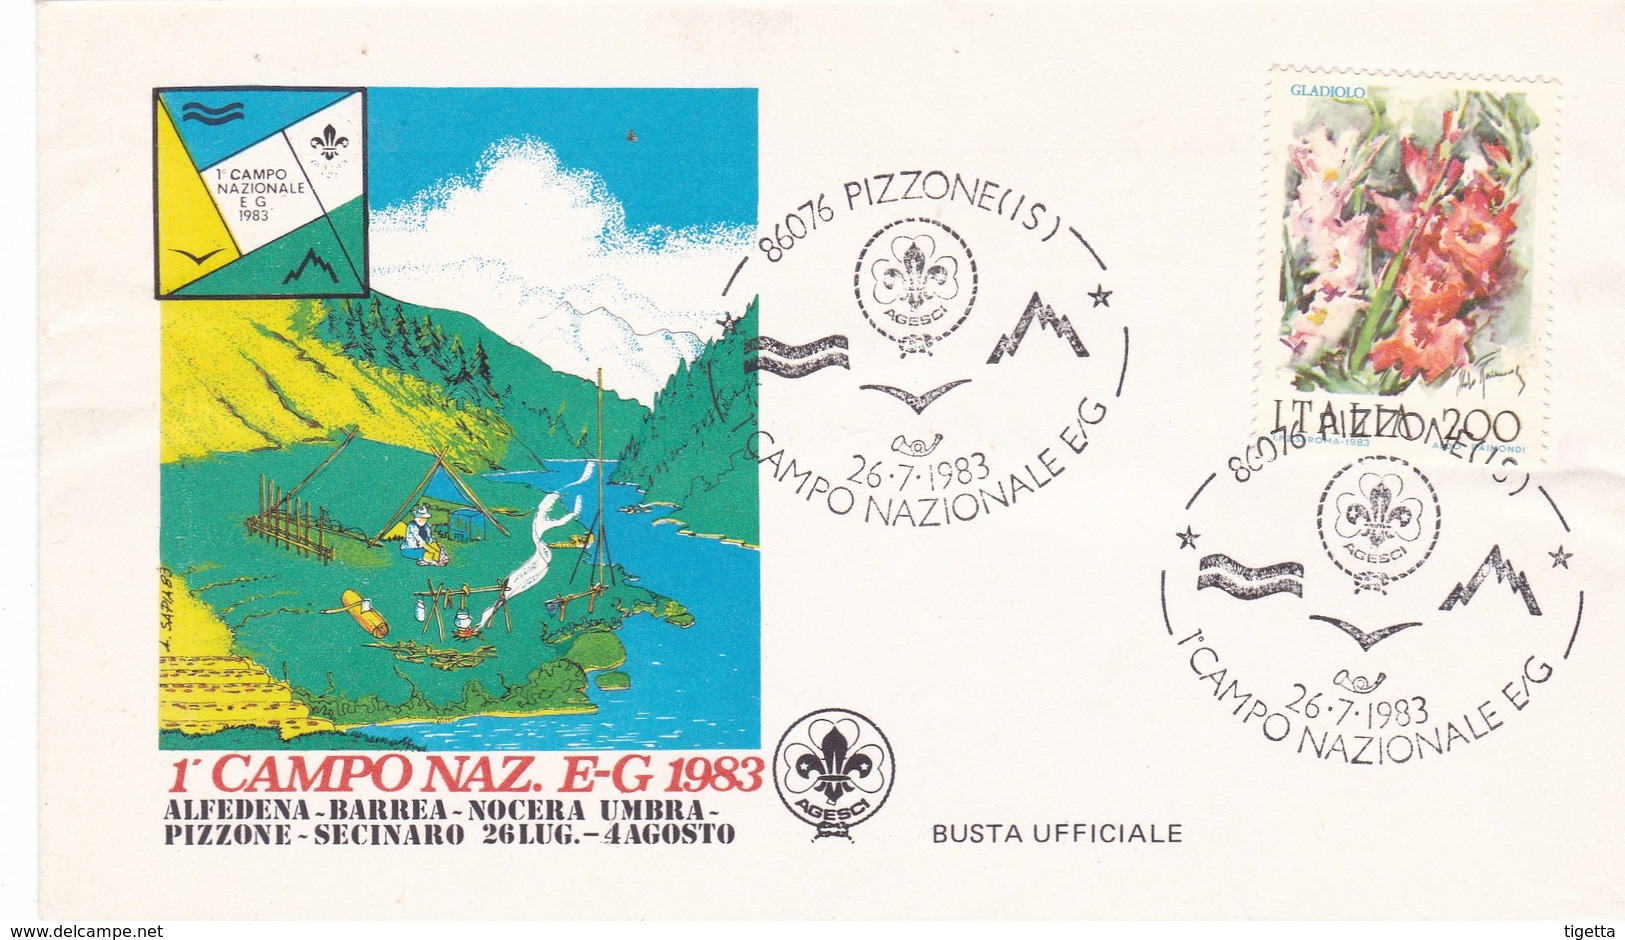 PIZZONE (IS) 1° CAMPO NAZIONALE E-G 1983 - FDC